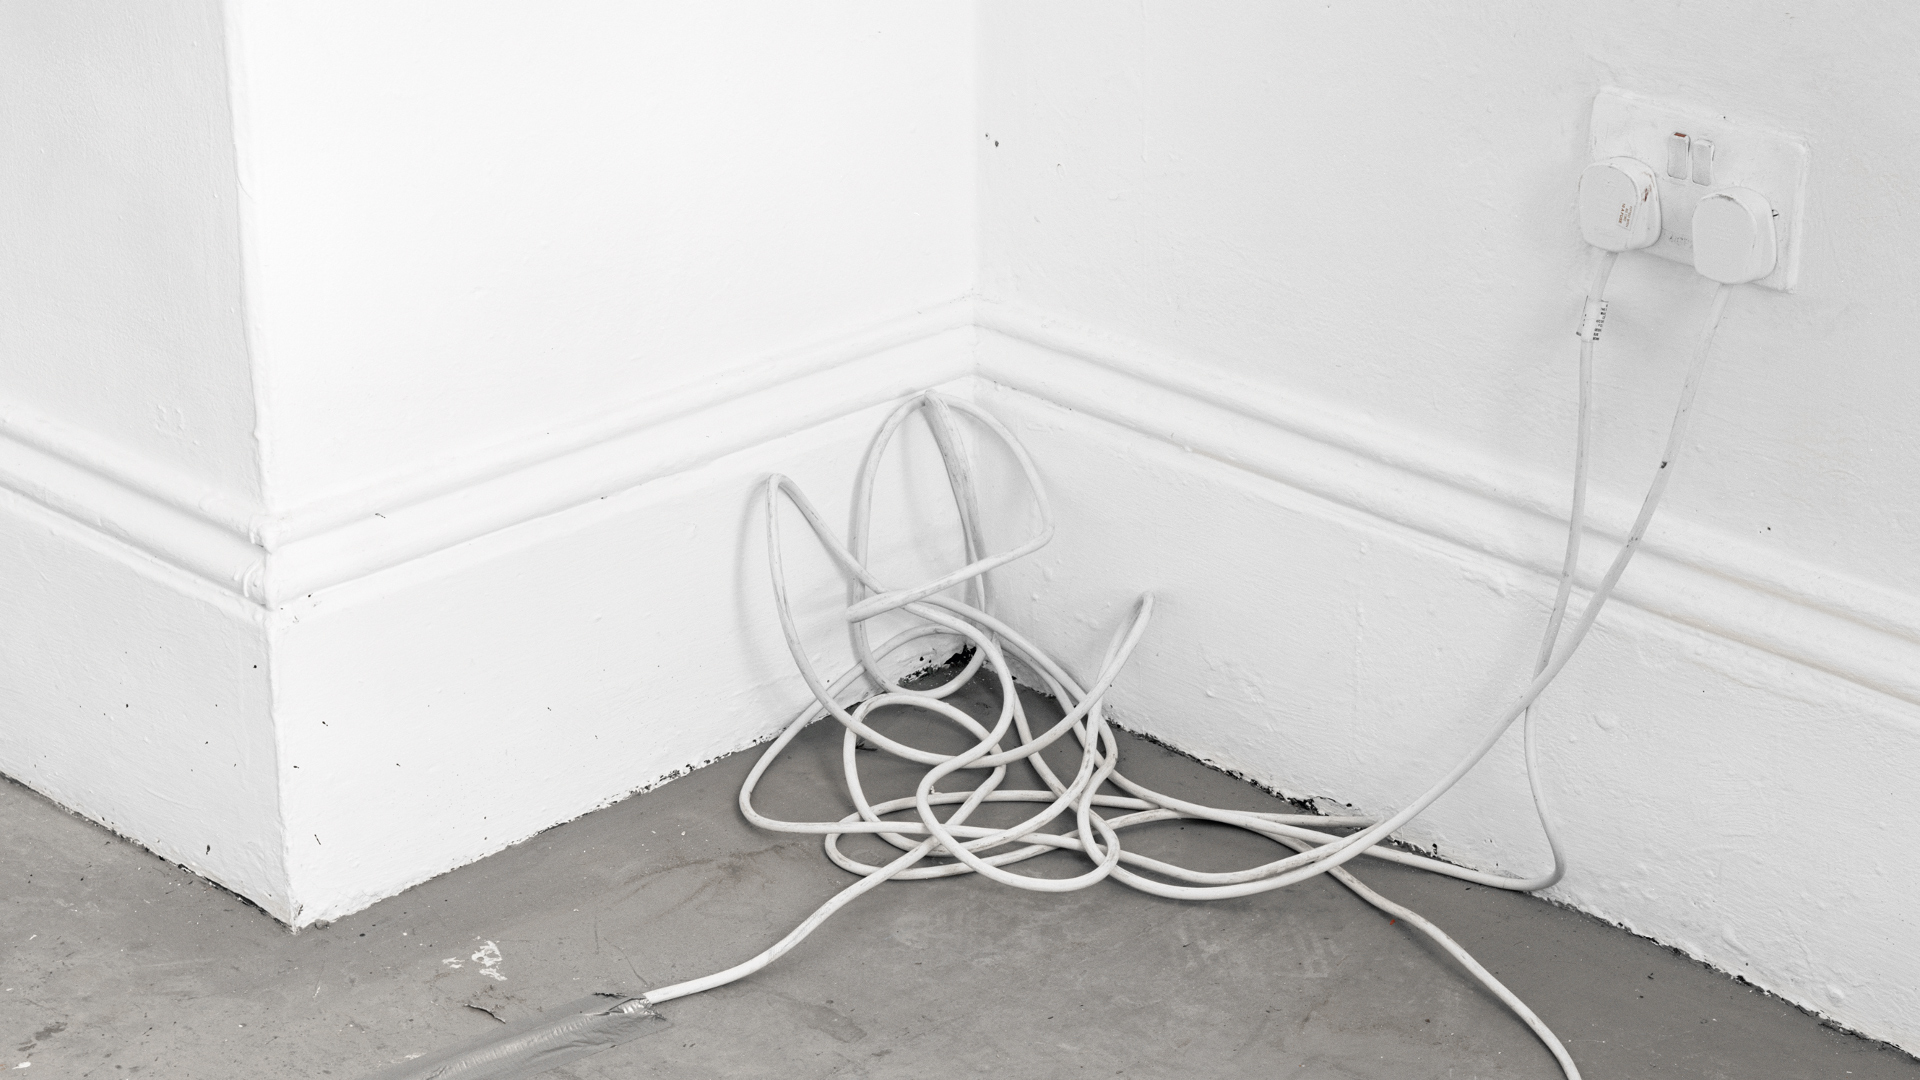 Electrical wire. Slade School of Fine Art, London, England, 2017